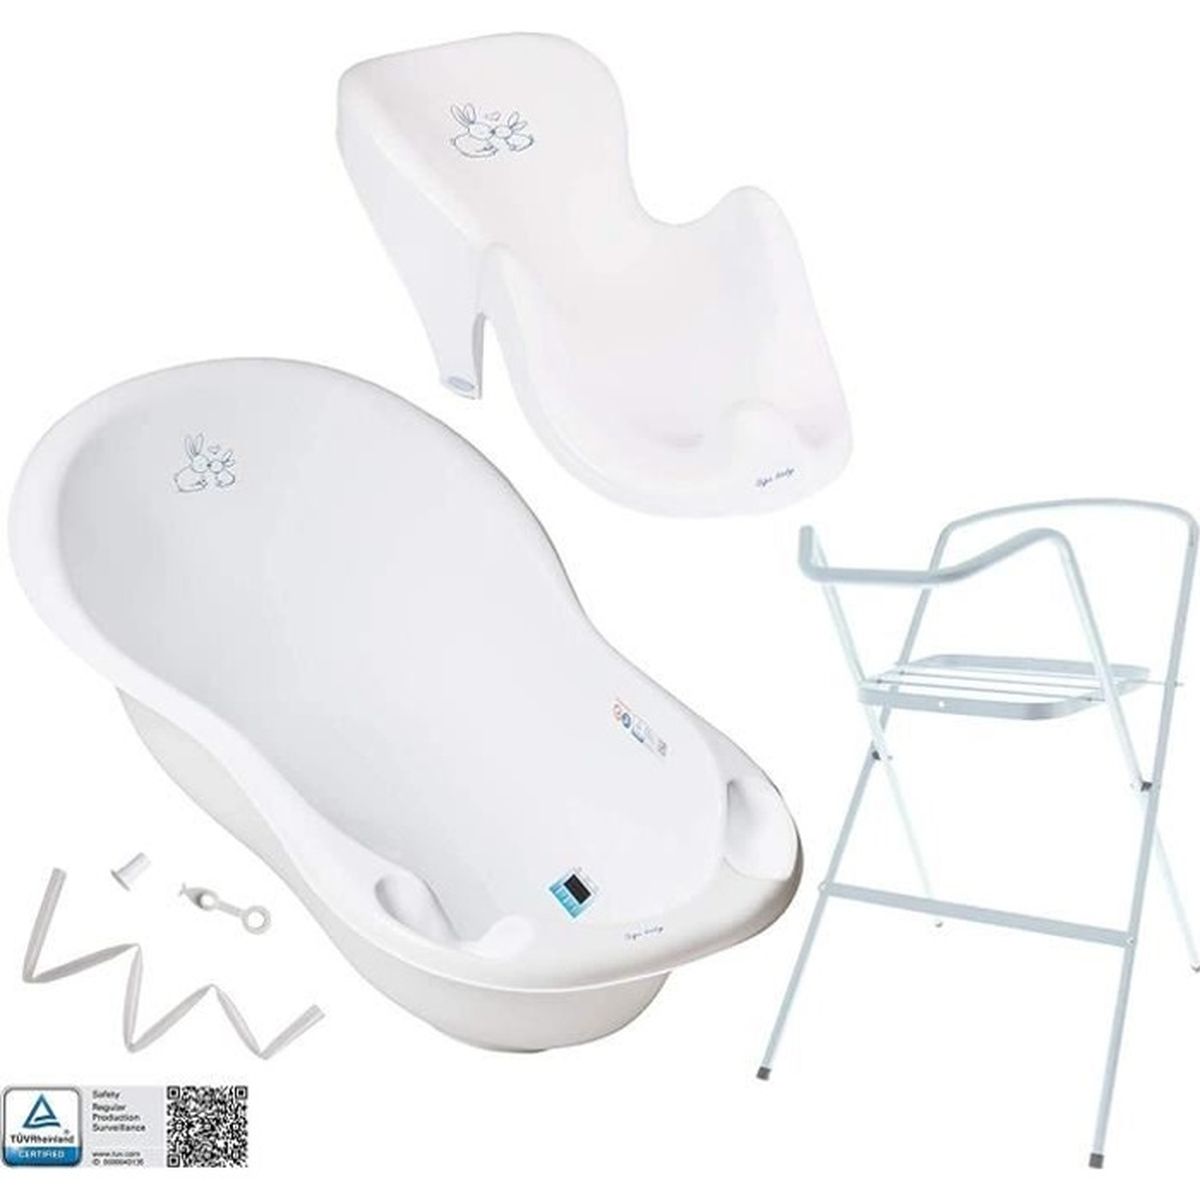 siège transat Set de bain ensemble pour le bébé enfant nouveau-née baignoire support pliable Tega Baby Chien et Chat couleur bleu